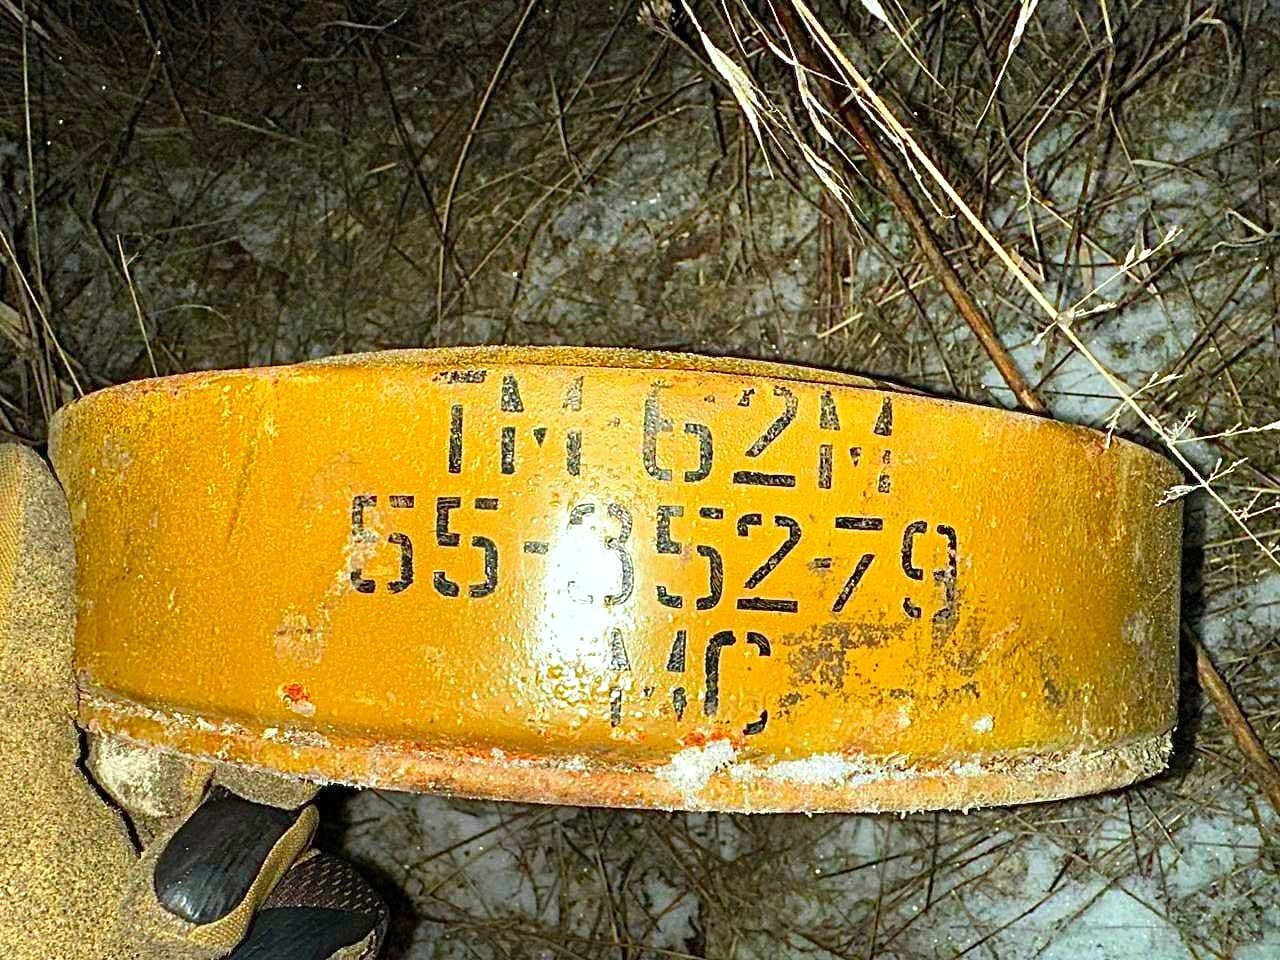 Як виглядають міни та гранати, що знайшли на автотрасі «Київ-Харків-Довжанський»